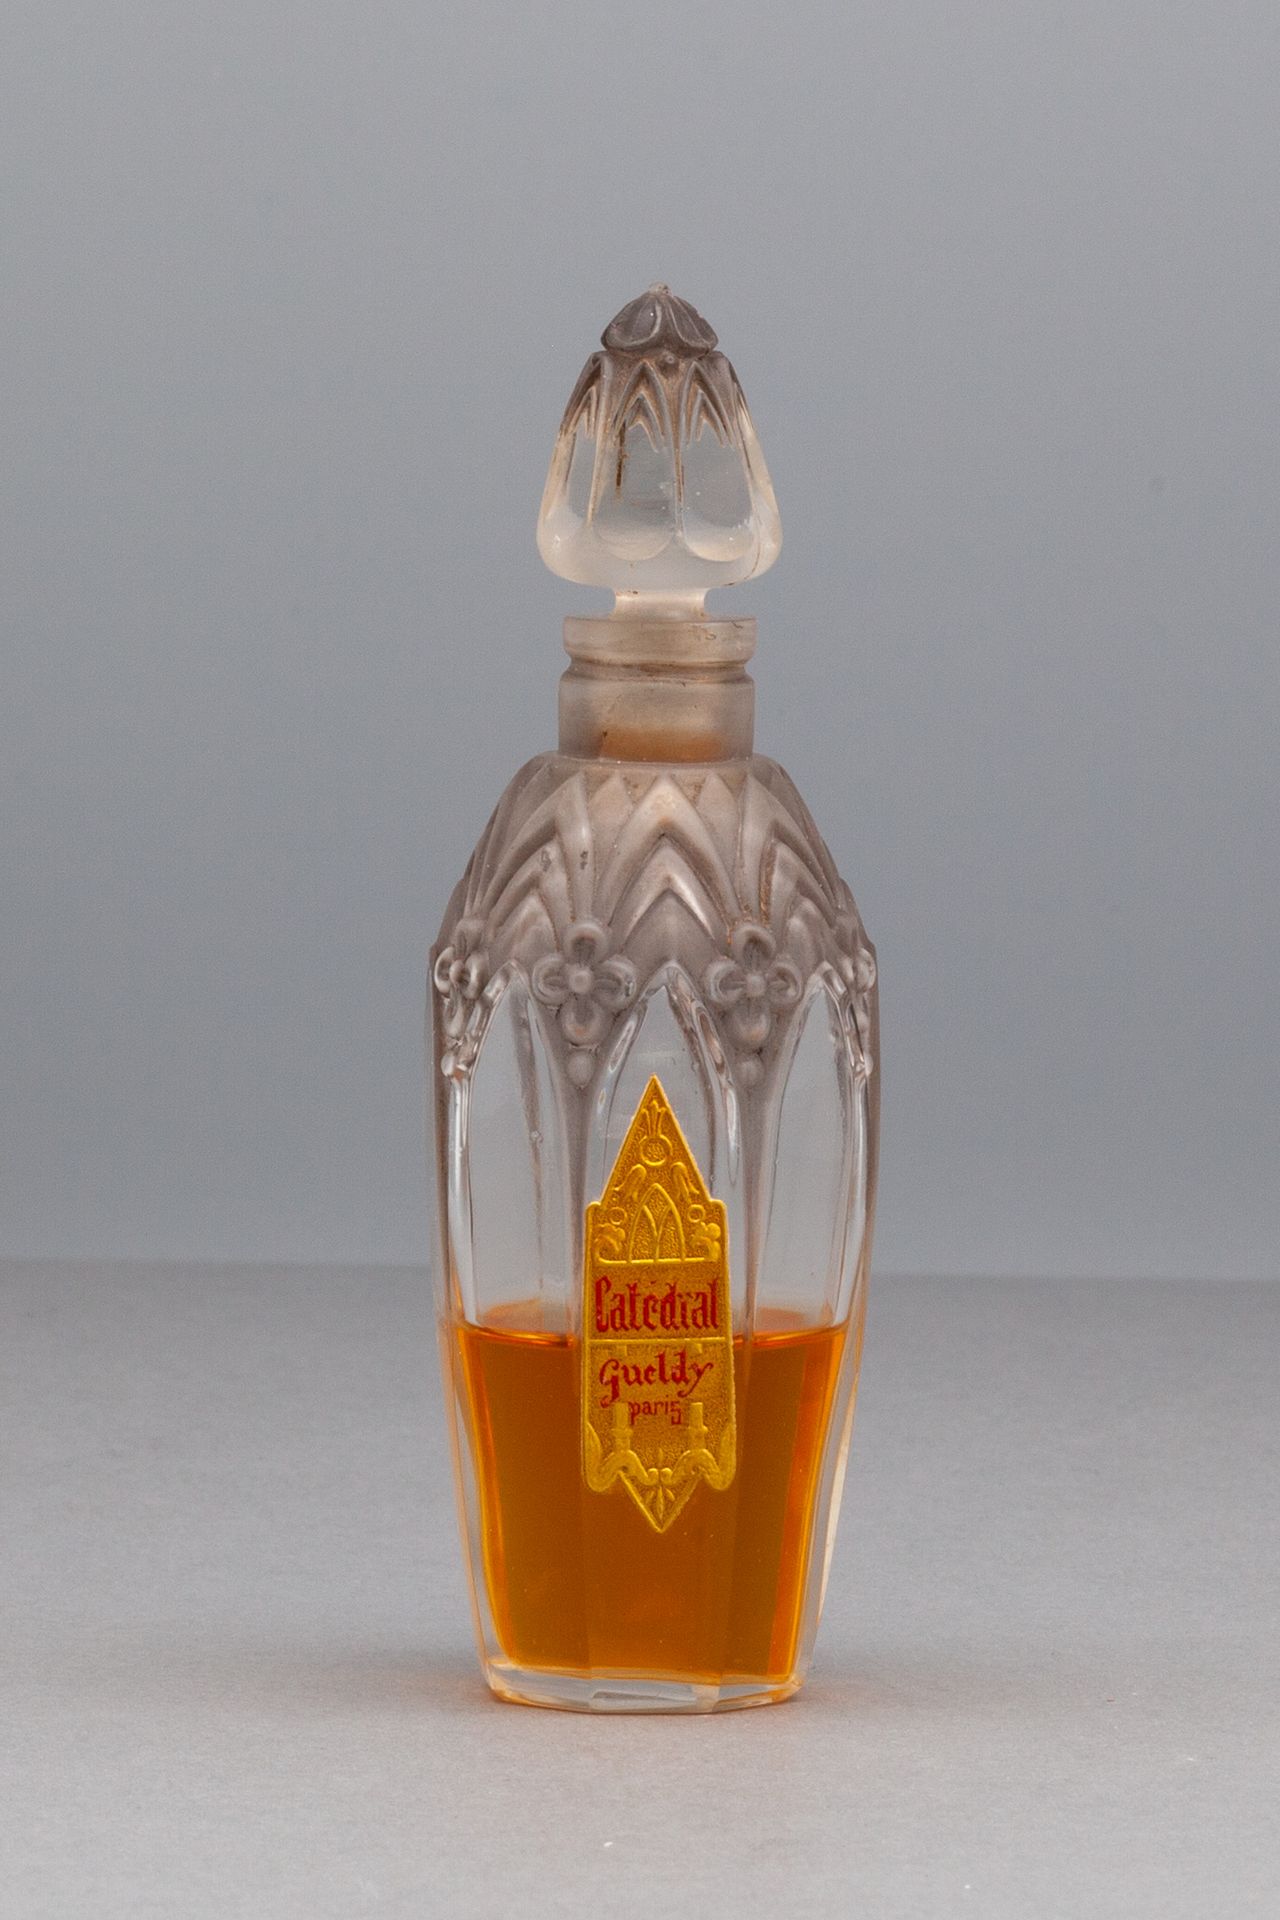 GUELDY "CATEDRAL" Botella de vidrio en forma de aceituna con decoración de flore&hellip;